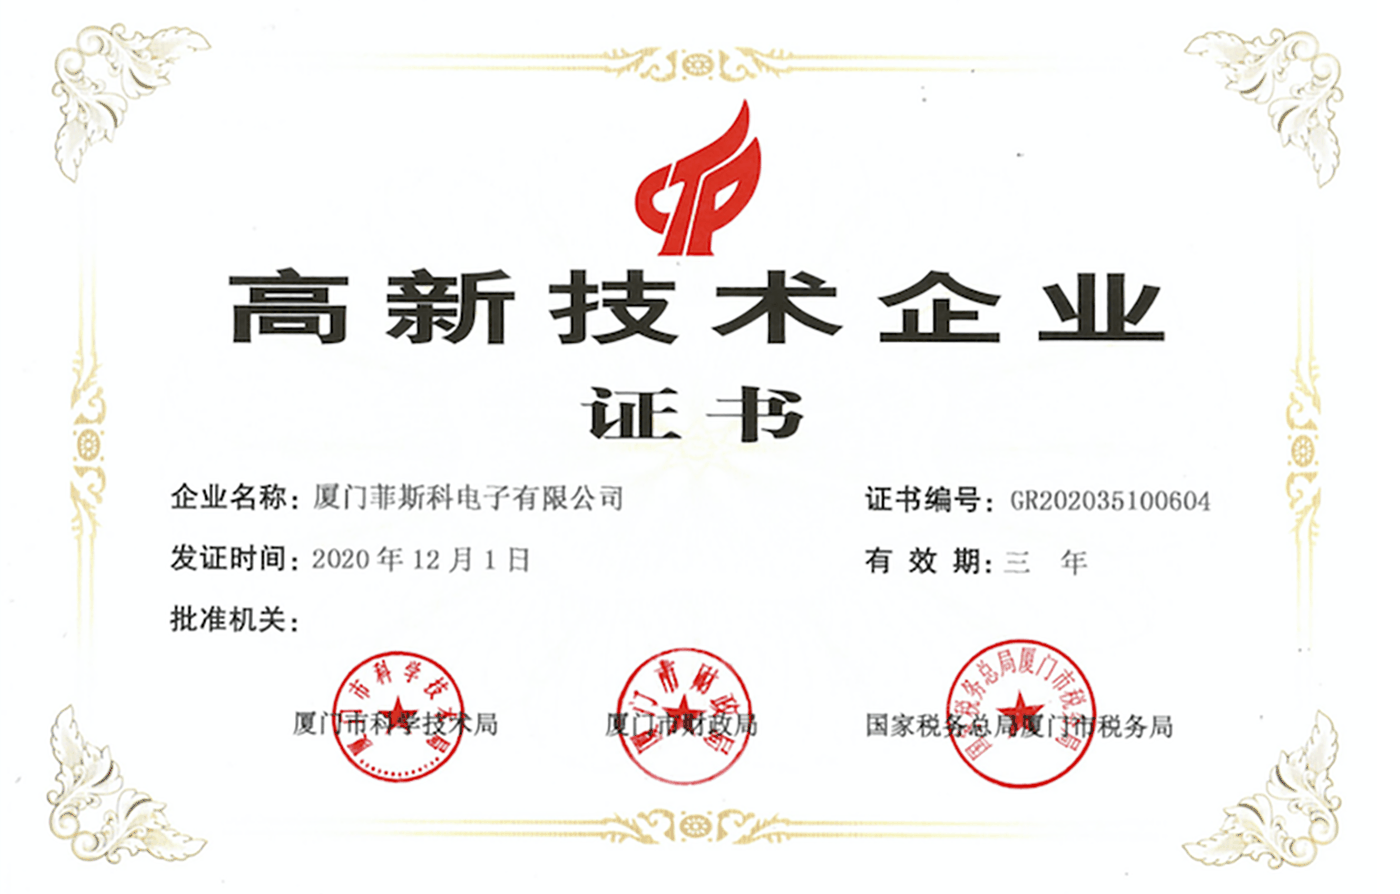 Certificato di impresa high-tech.png